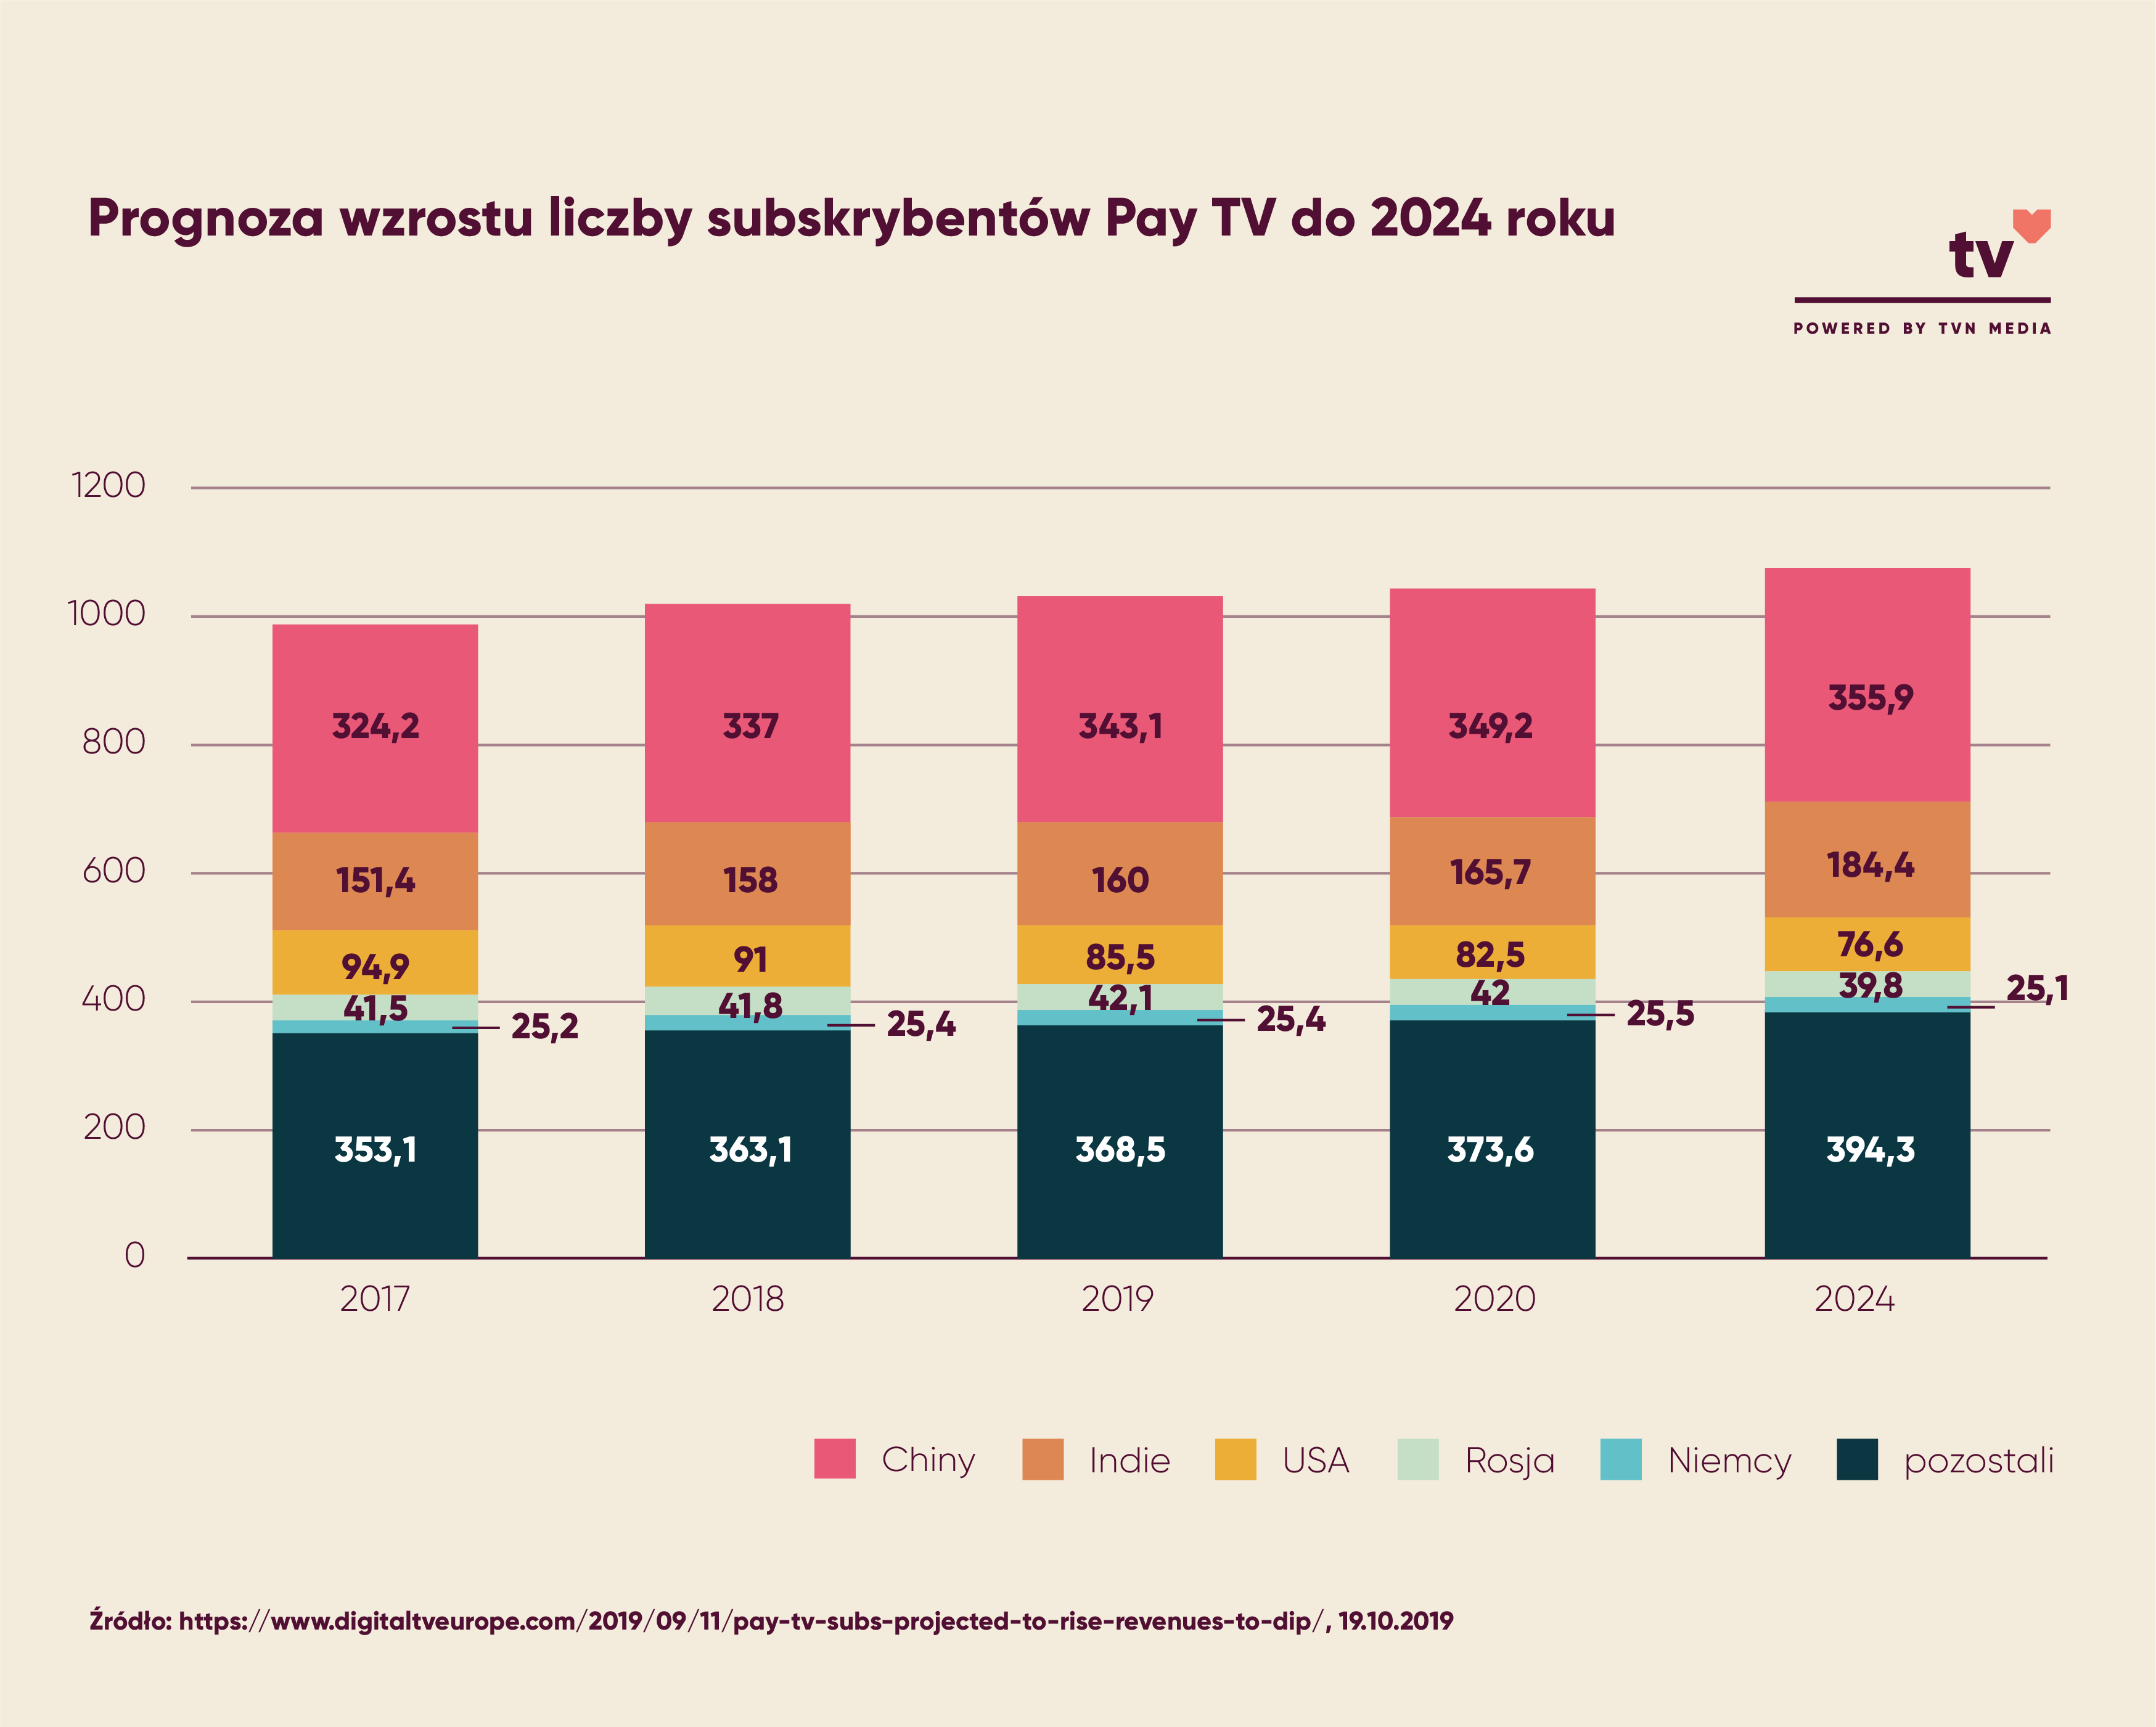 Prognoza wzrostu liczy subskrybentów Pay TV do 2020 roku